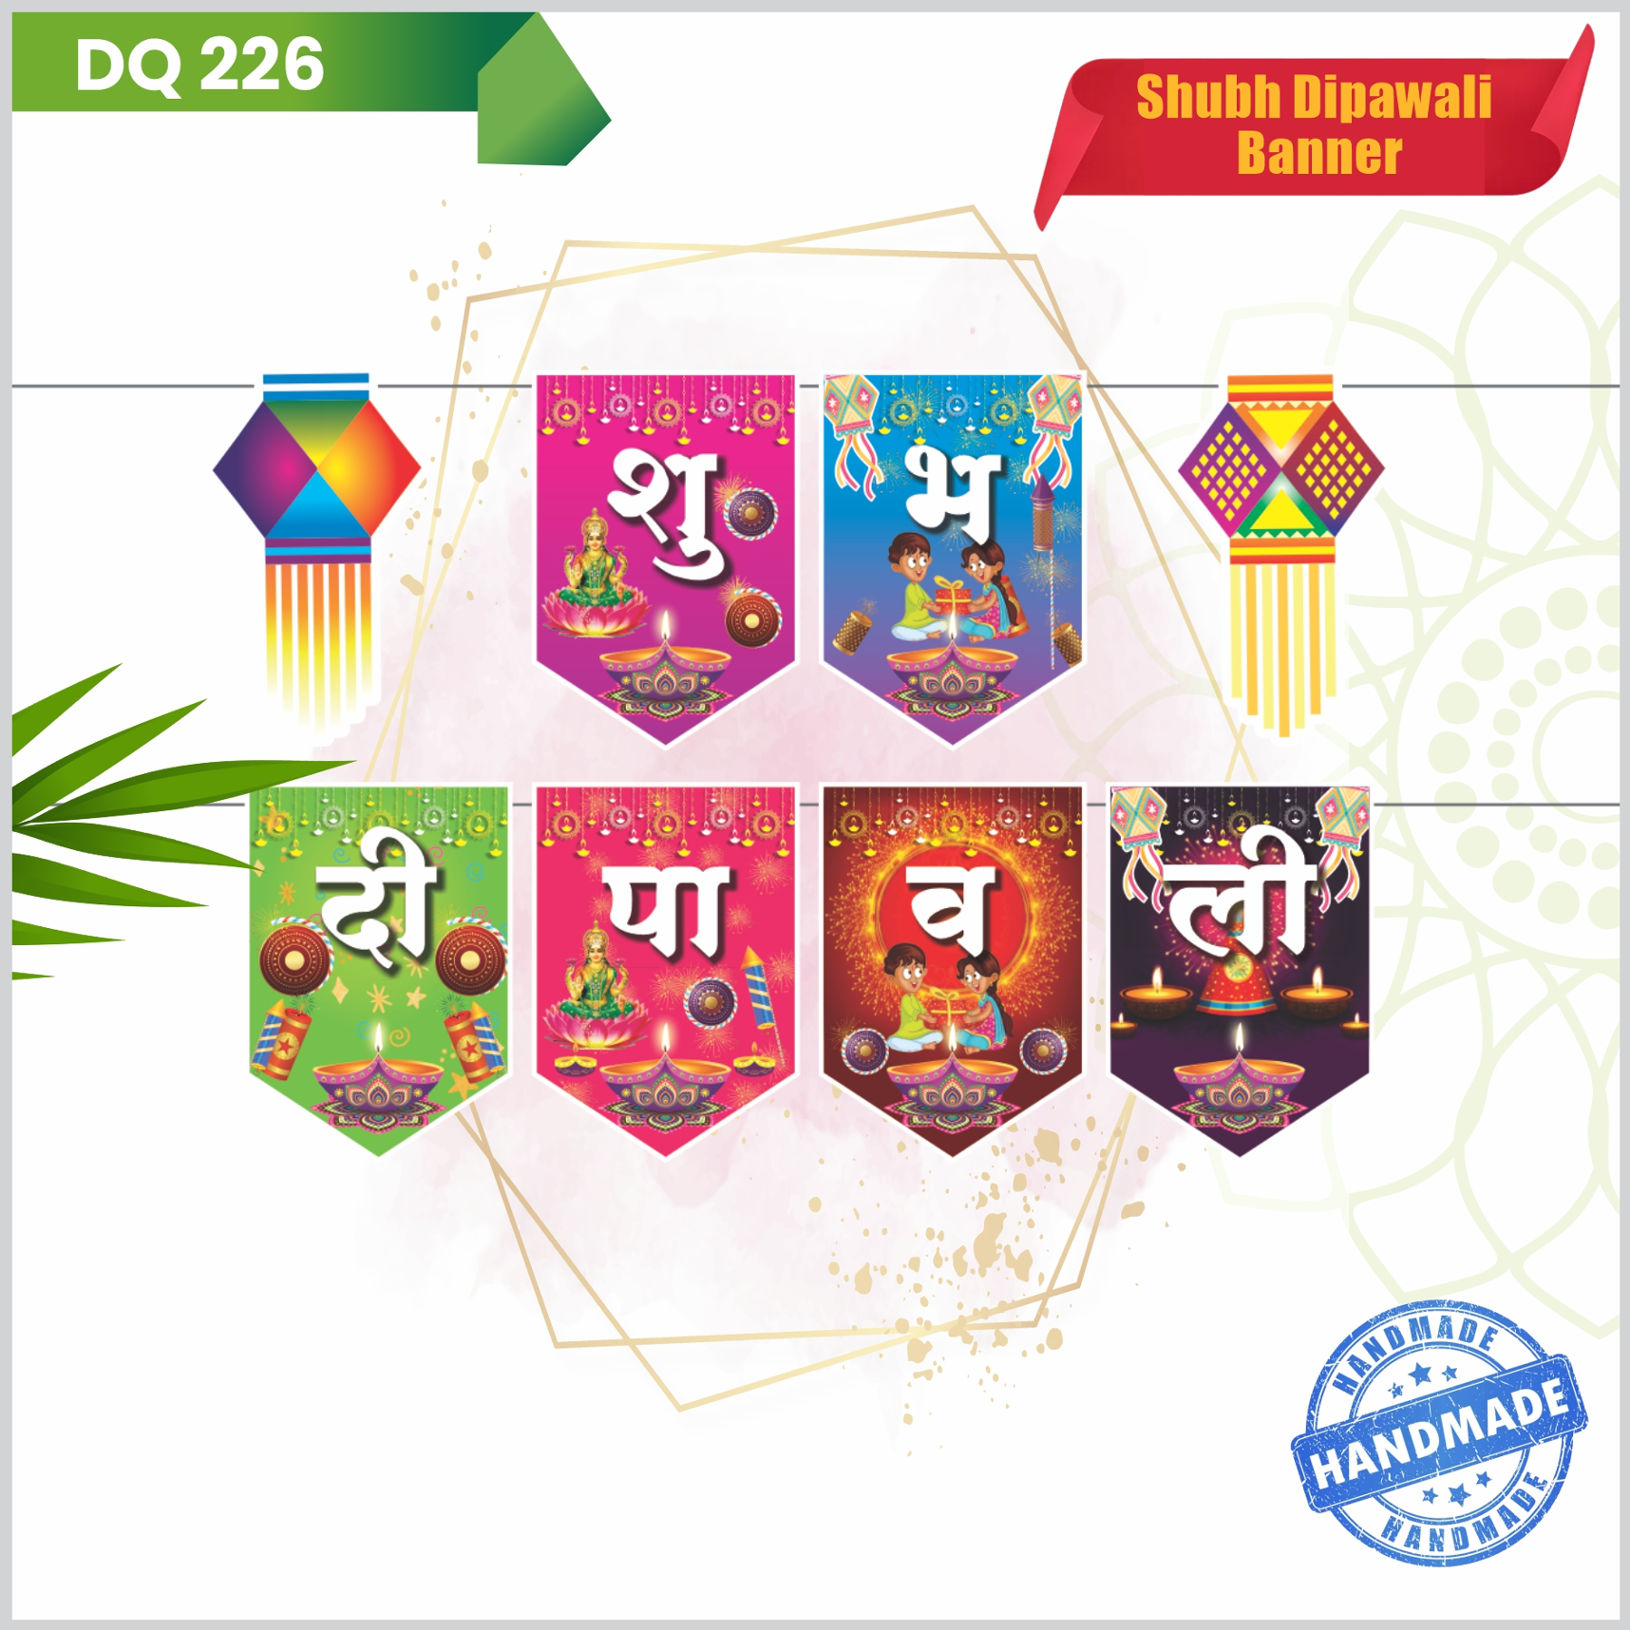 Shubh Diwali Banner|Festive Products|Diwali